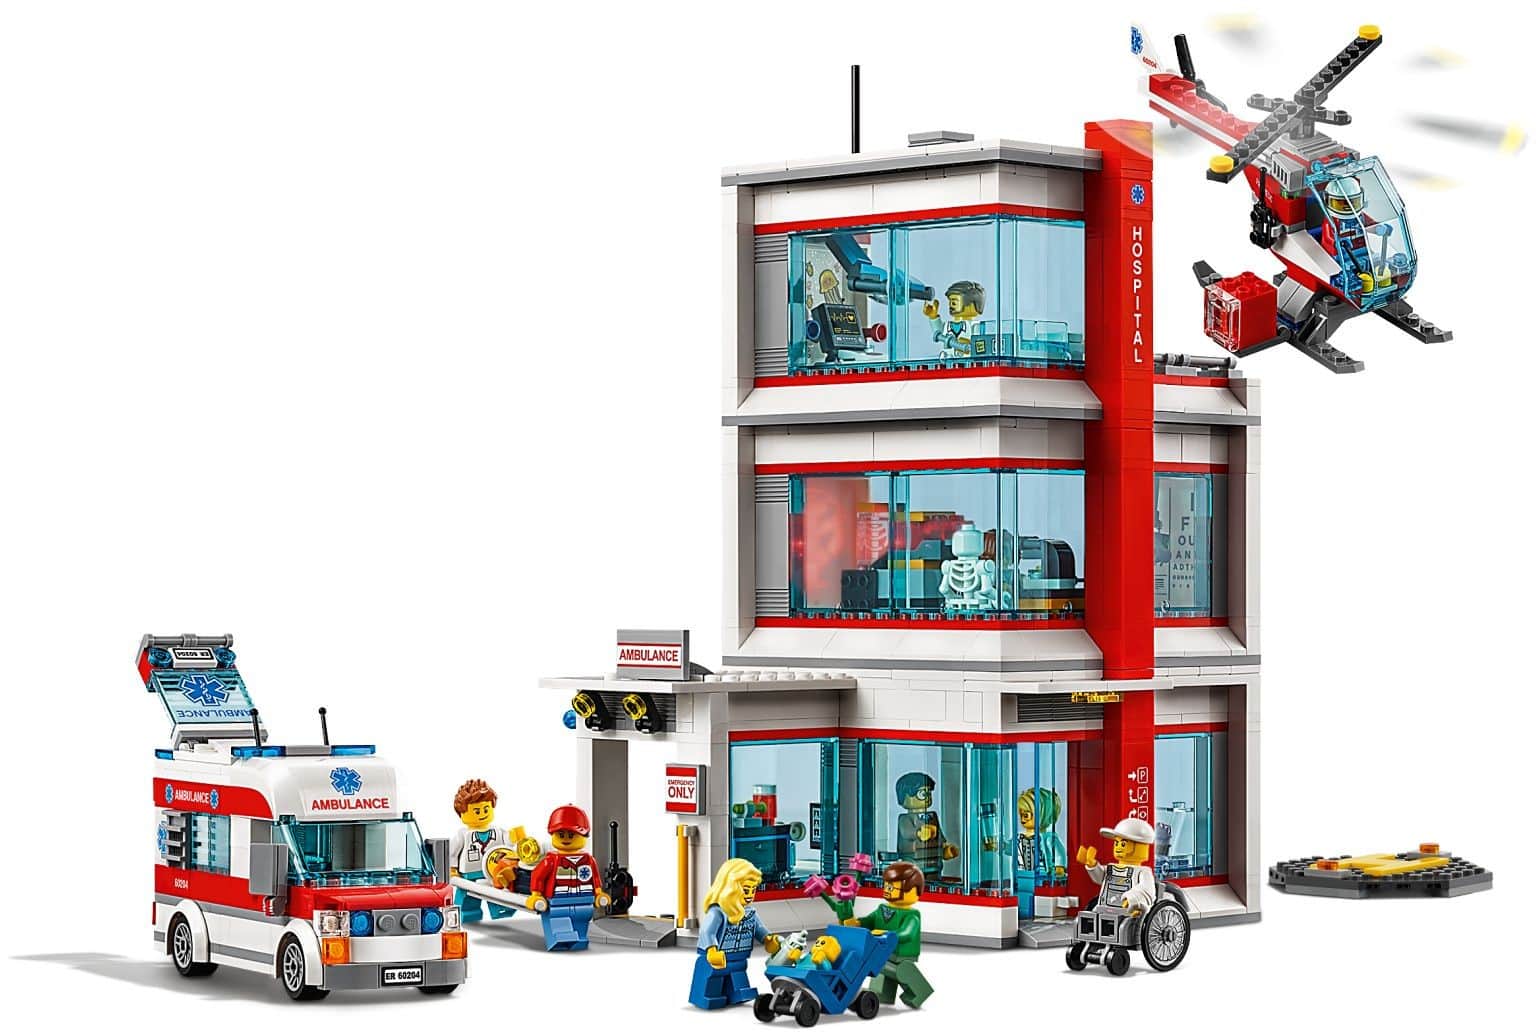 Конструктор LEGO City 60204 Городская больница